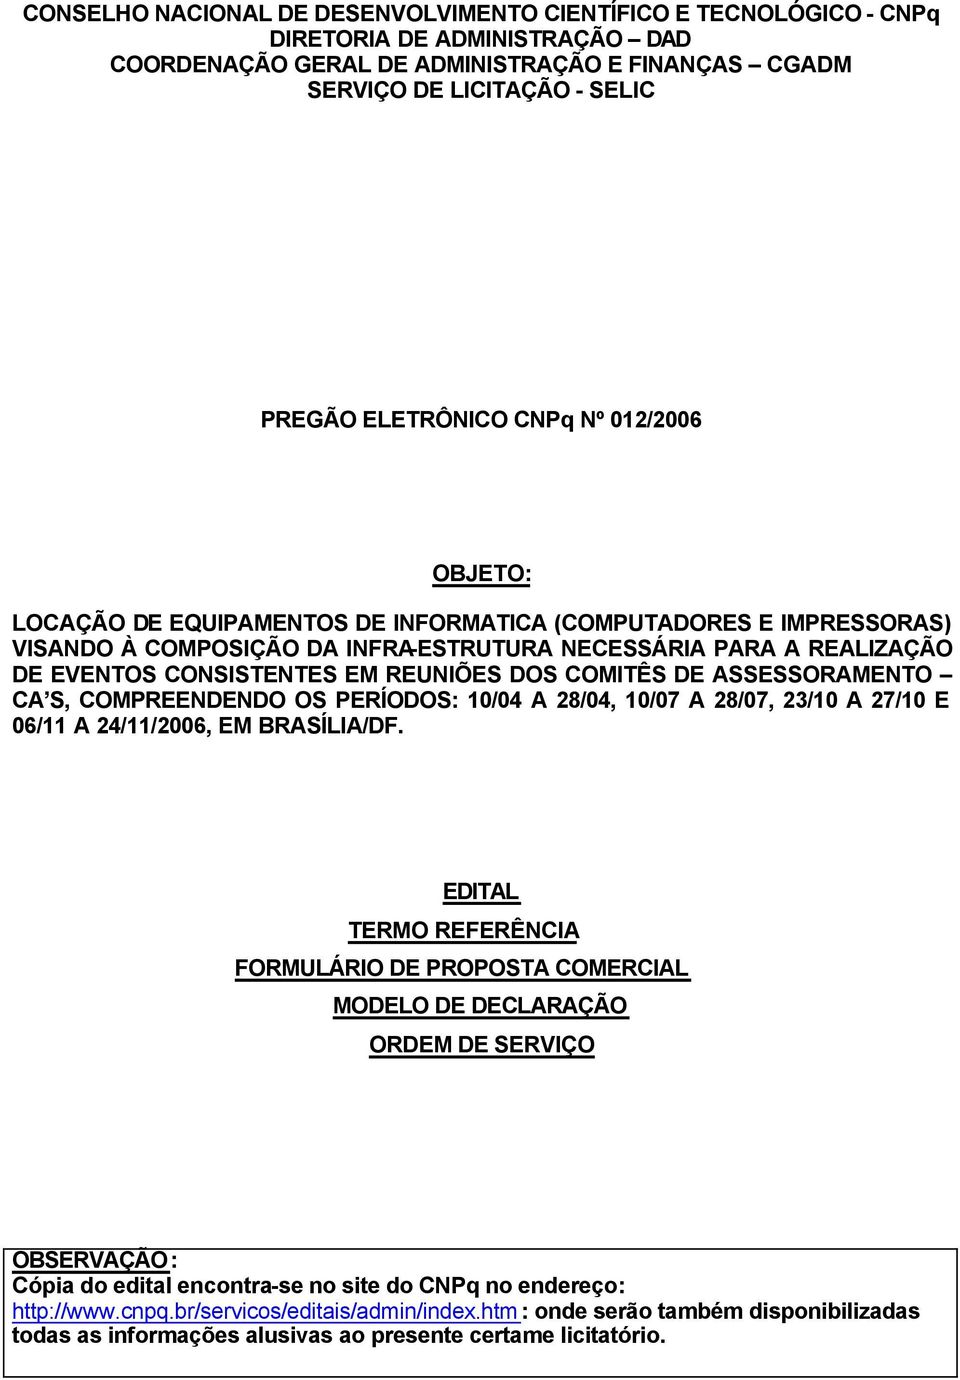 COMITÊS DE ASSESSORAMENTO CA S, COMPREENDENDO OS PERÍODOS: 10/04 A 28/04, 10/07 A 28/07, 23/10 A 27/10 E 06/11 A 24/11/2006, EM BRASÍLIA/DF.